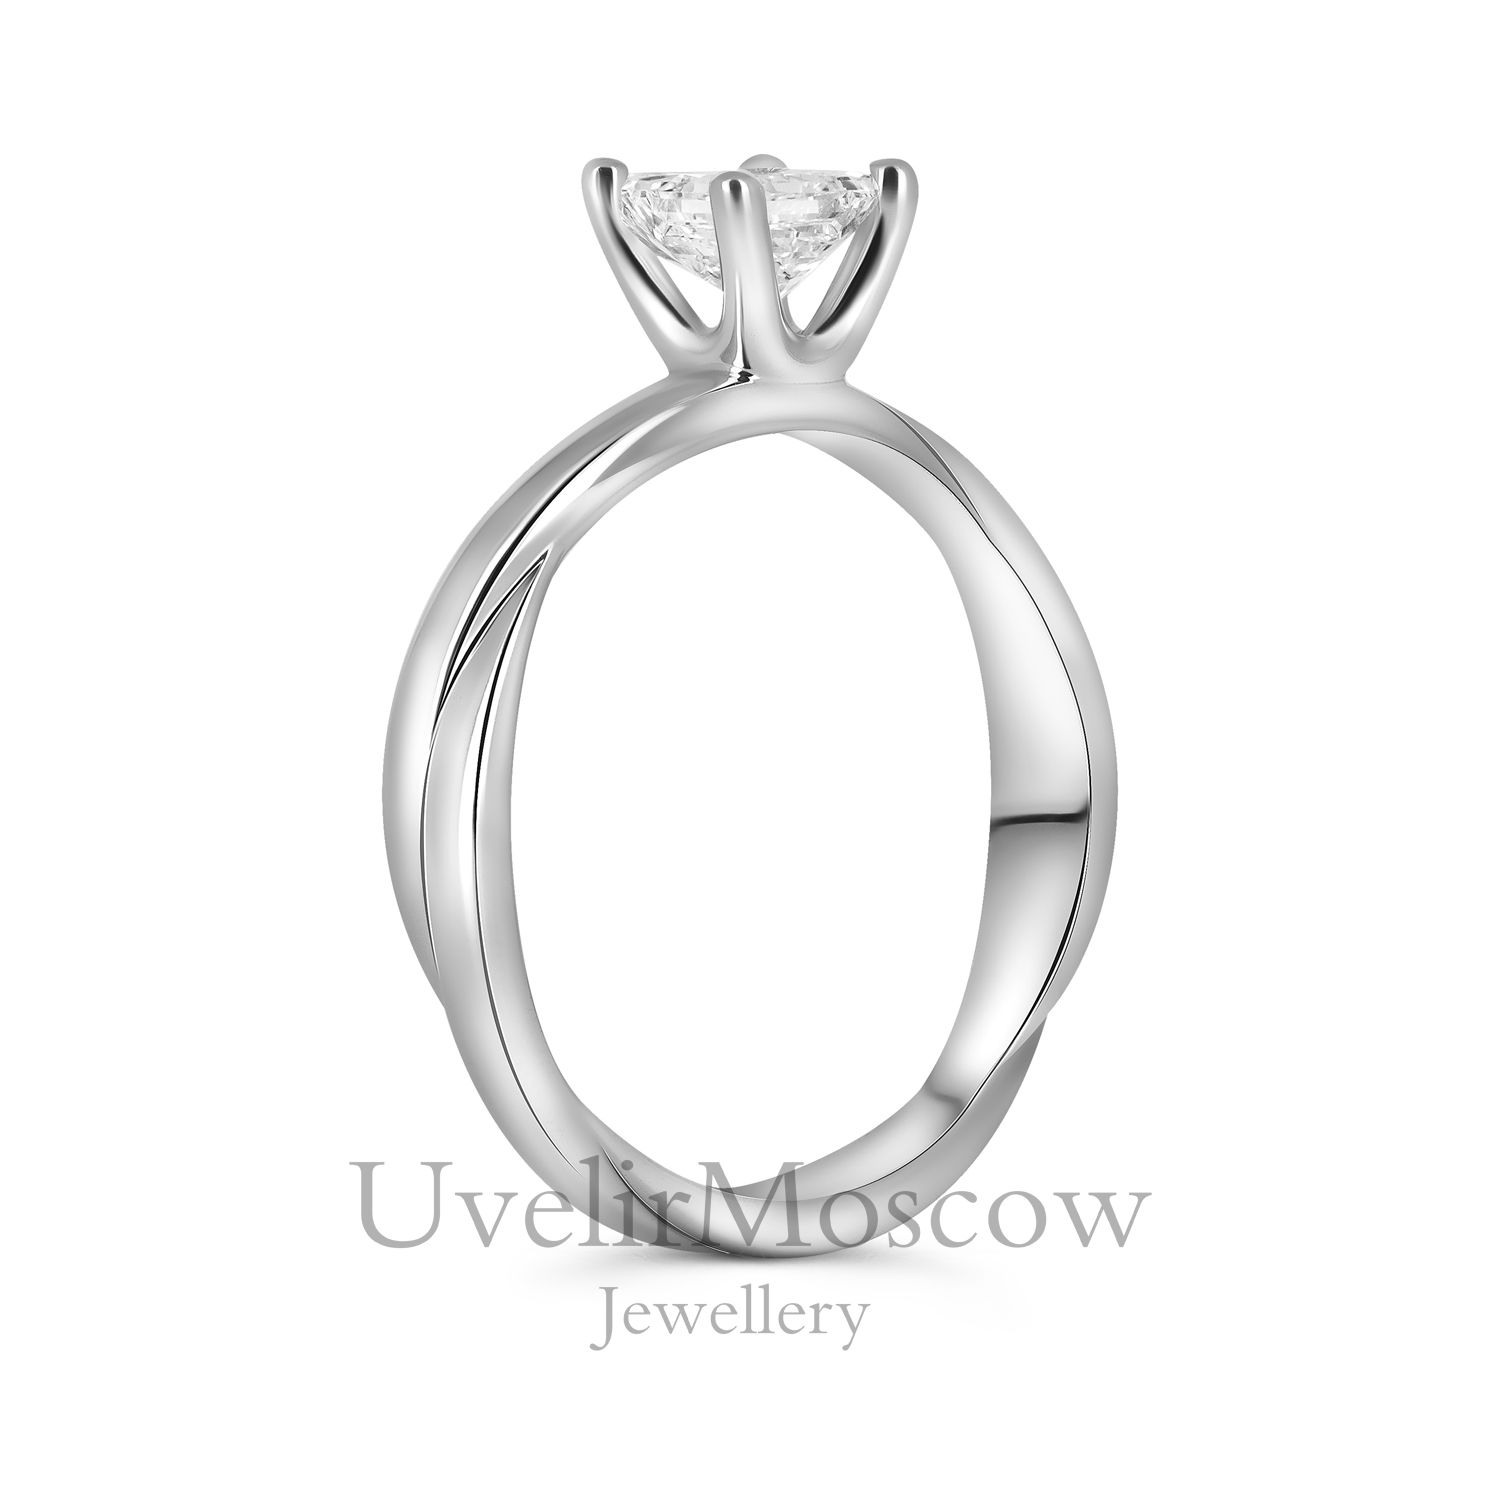 Оригинальное кольцо для помолвки с бриллиантом «Принцесса»